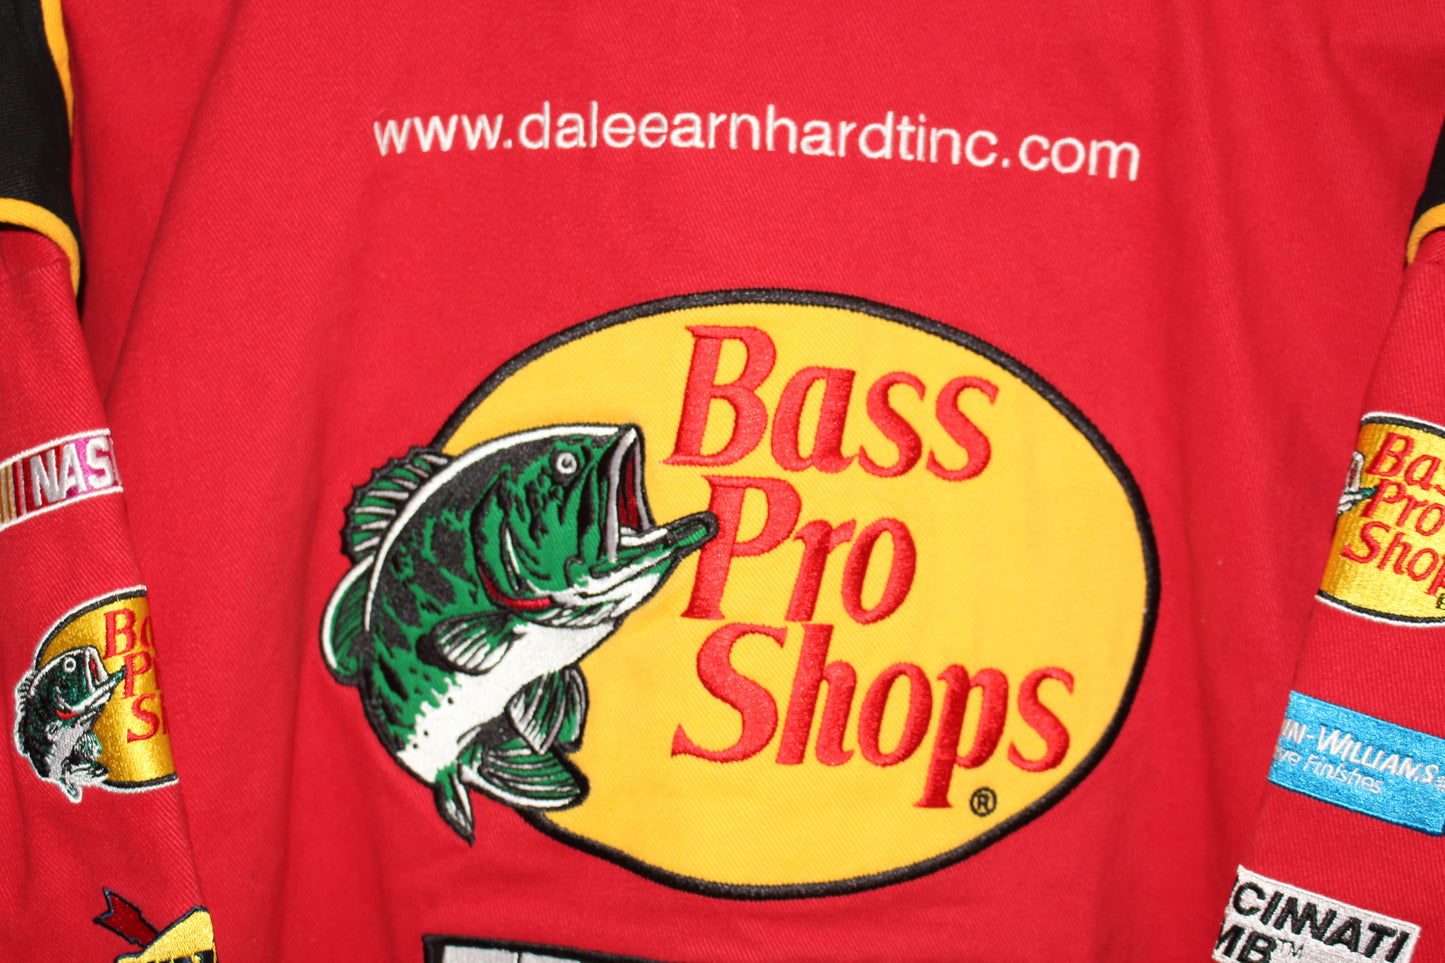 Bass Pro Shop Racing NASCAR Martin Truex Jr #1 (XL)